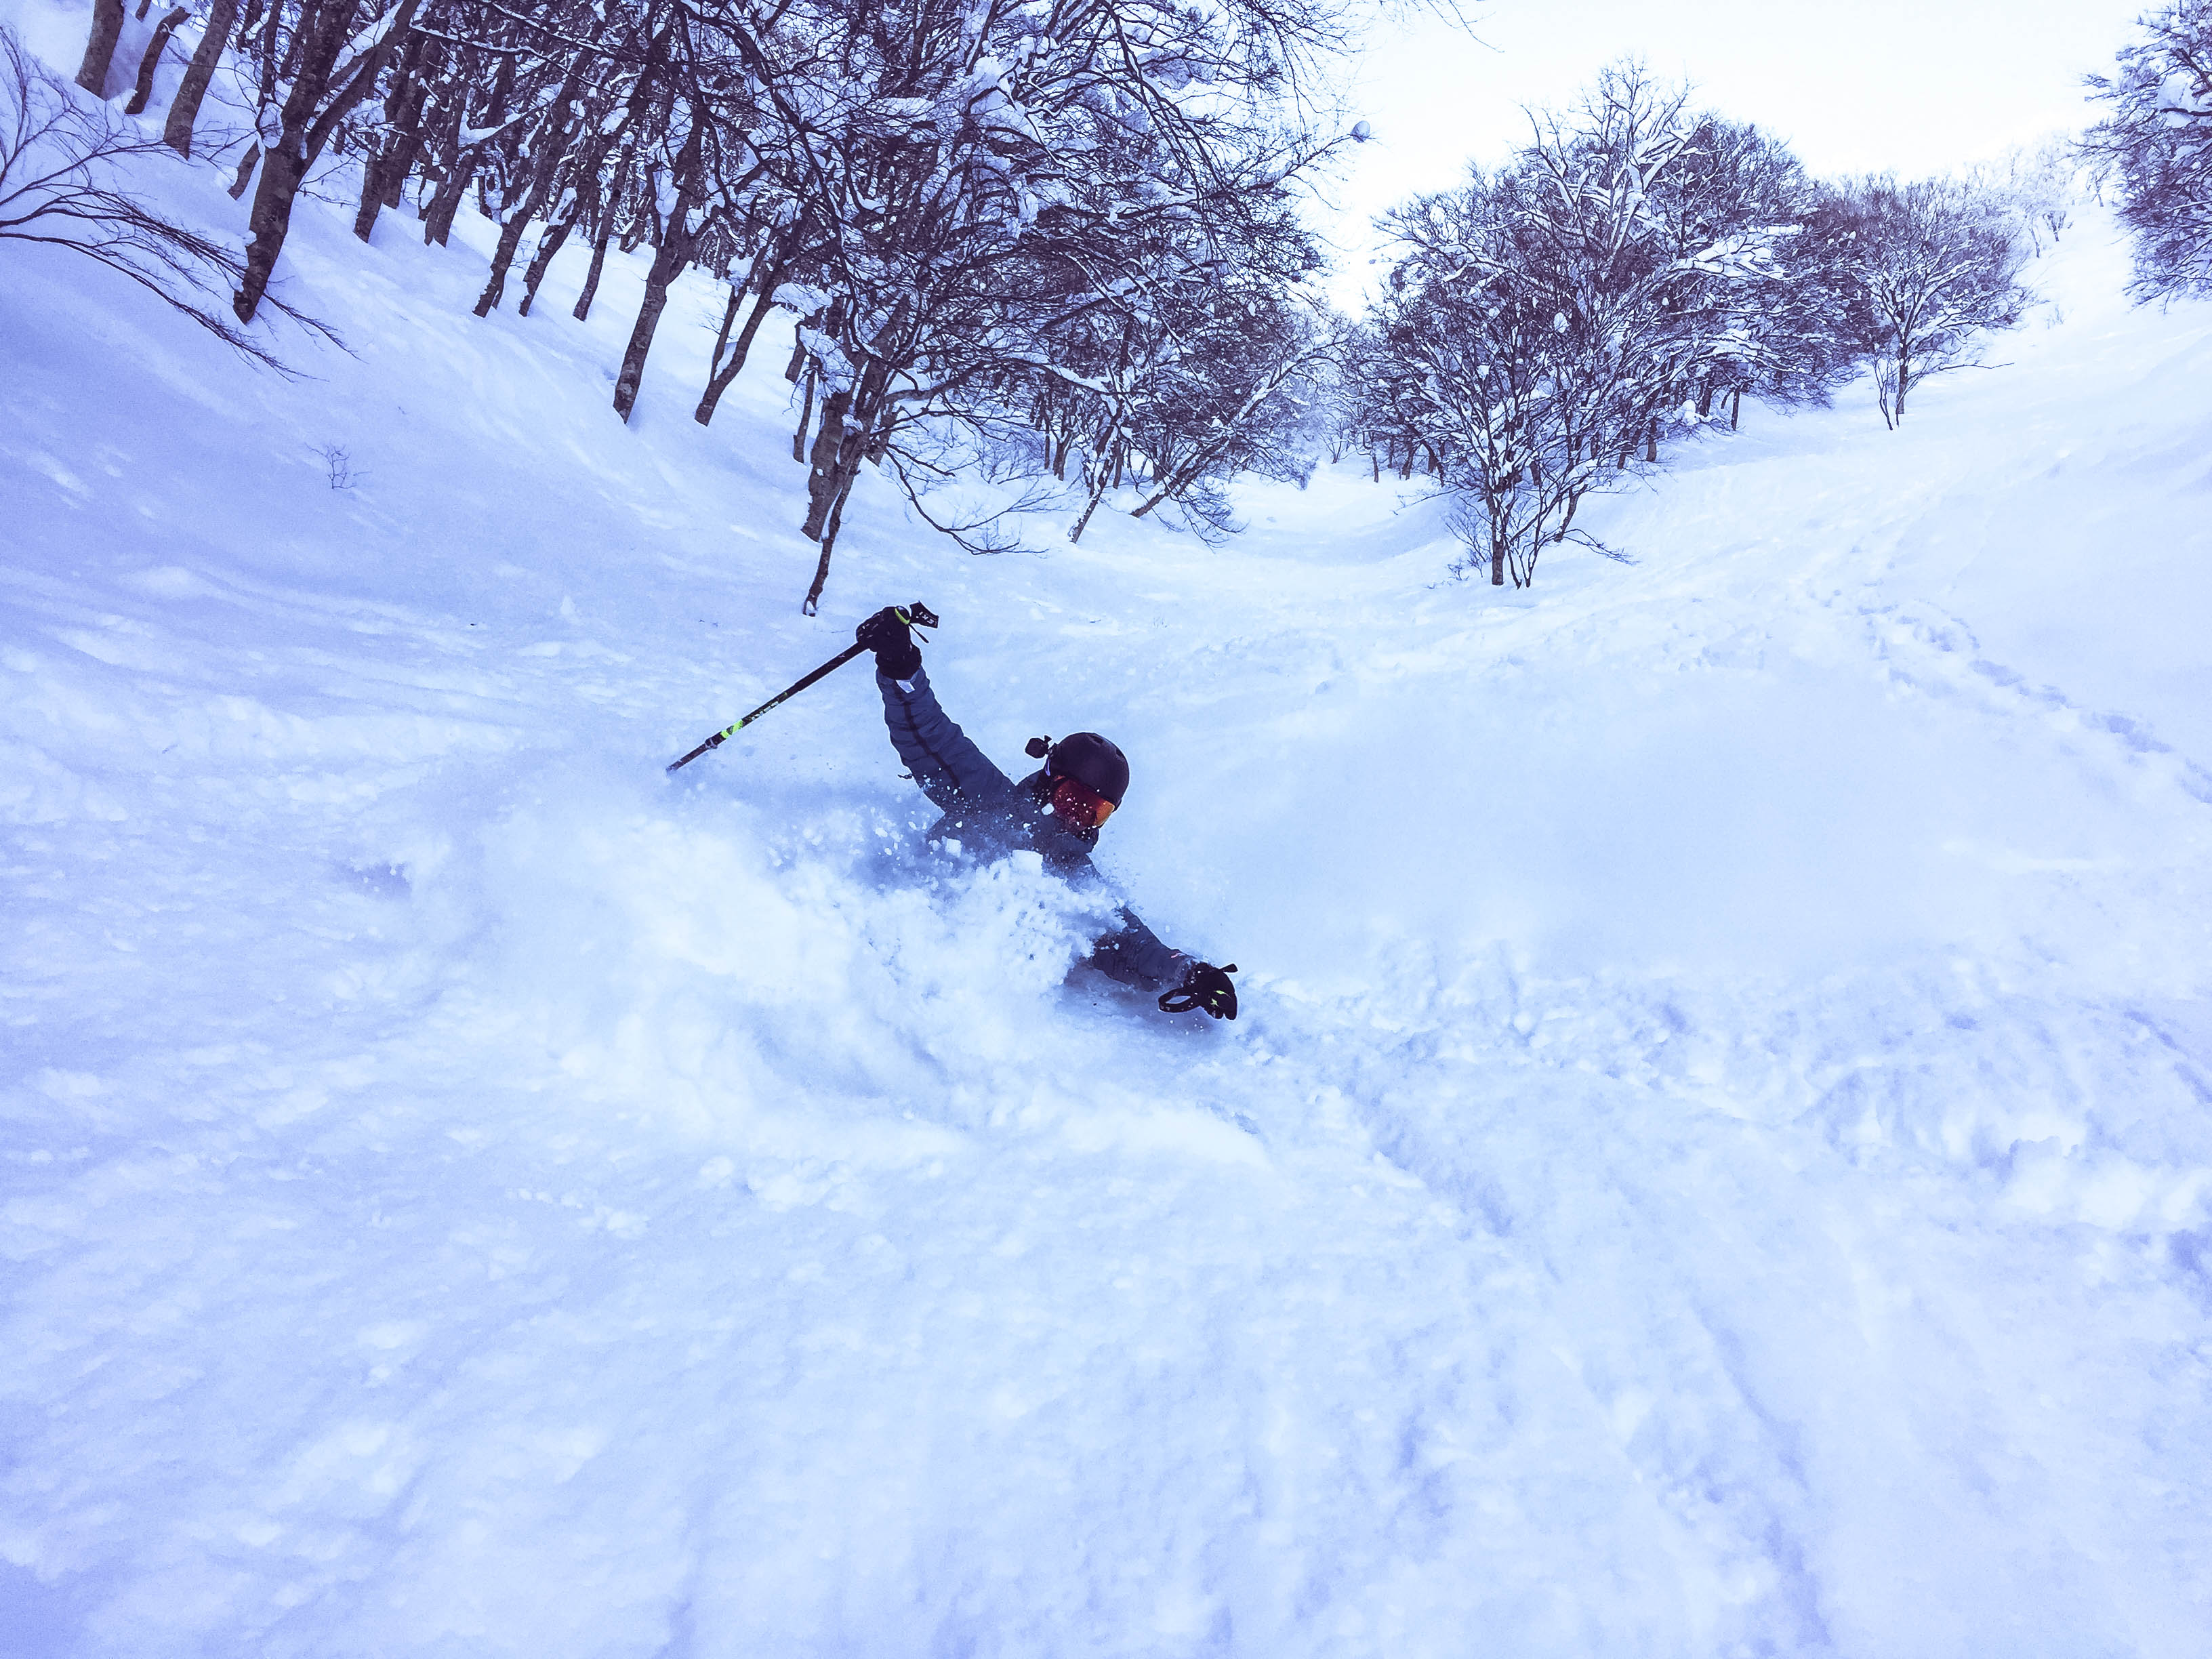 Nozawa Onsen Japan - Powder Skiing